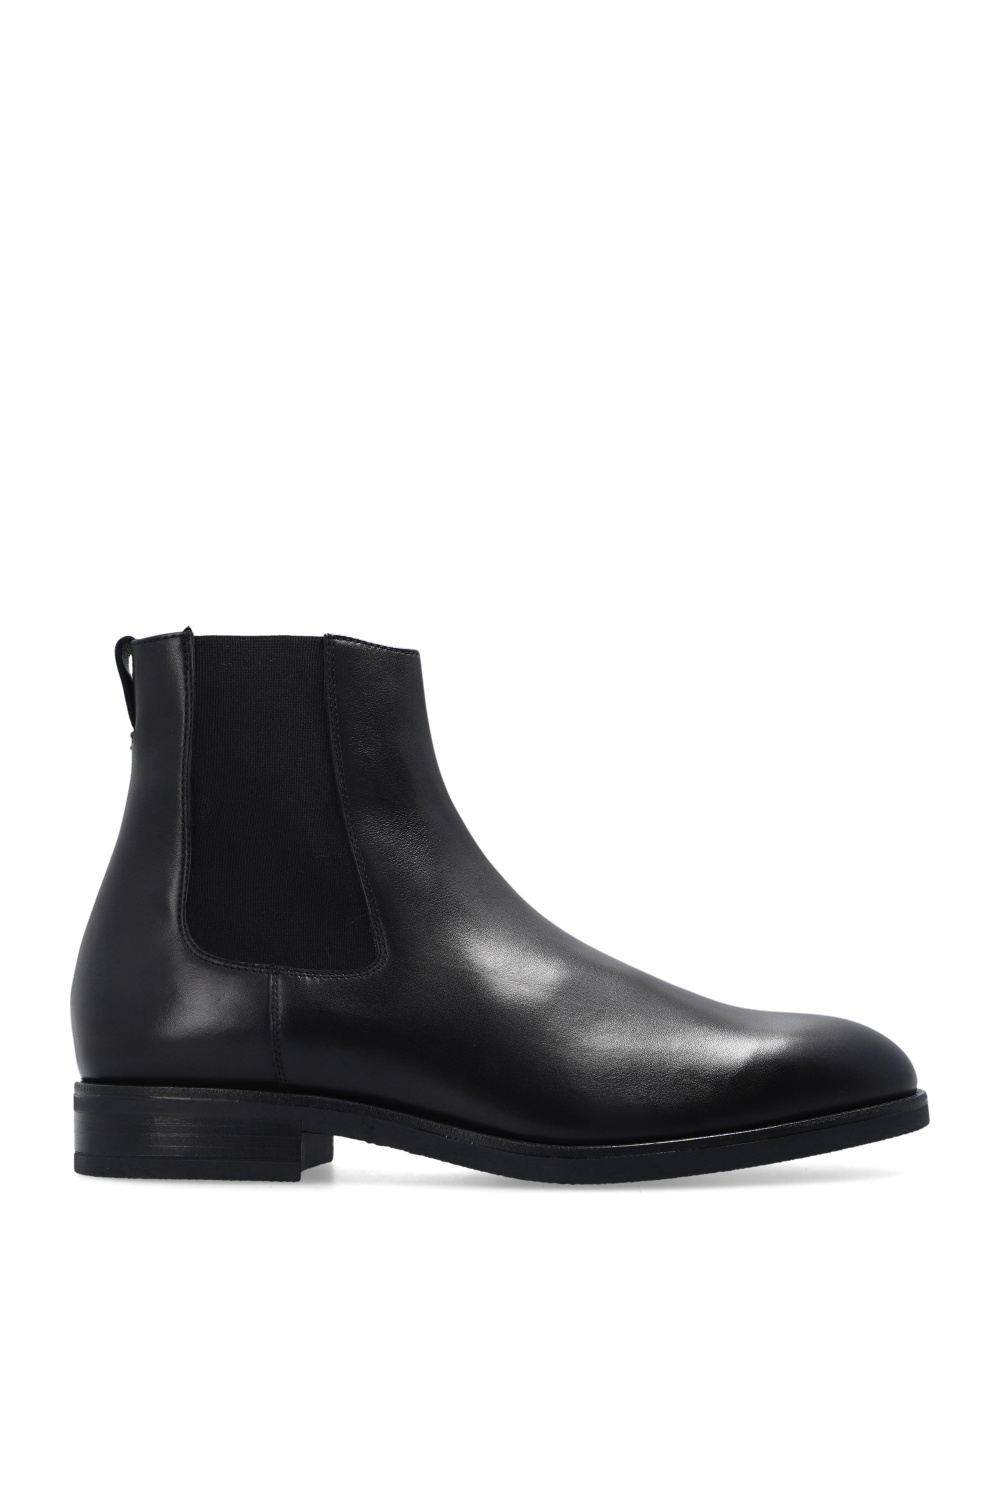 Paul Smith ‘Canon’ Chelsea boots | Men's Shoes | Vitkac